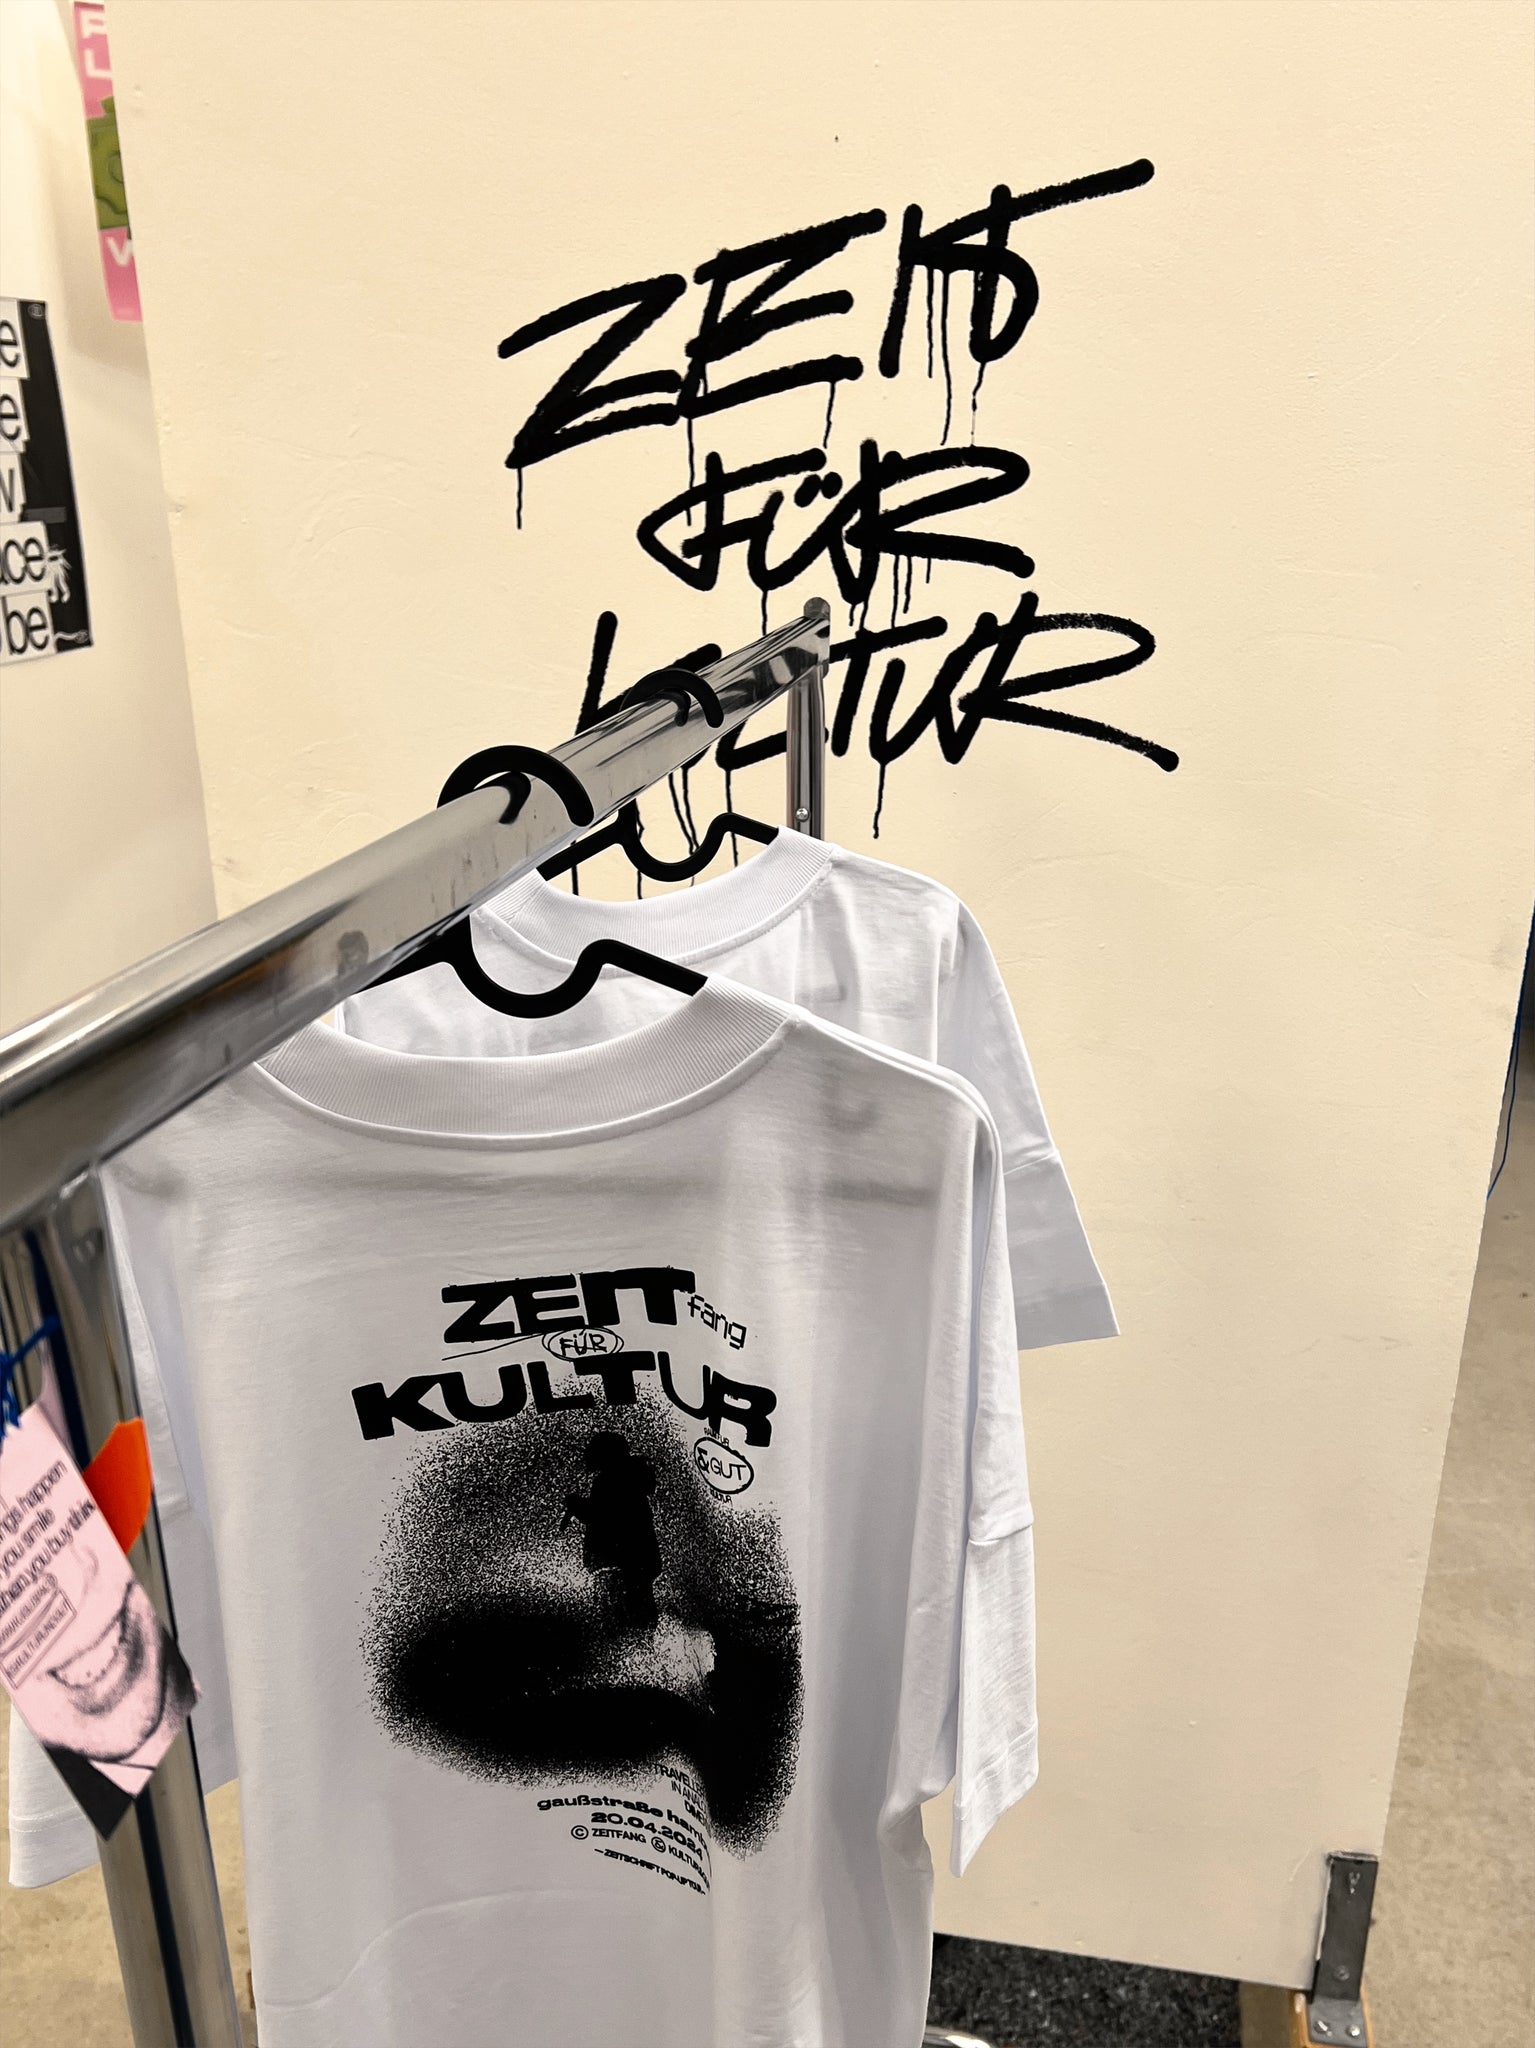 ZEIT FÜR KULTUR Shirt + Zeitschrift